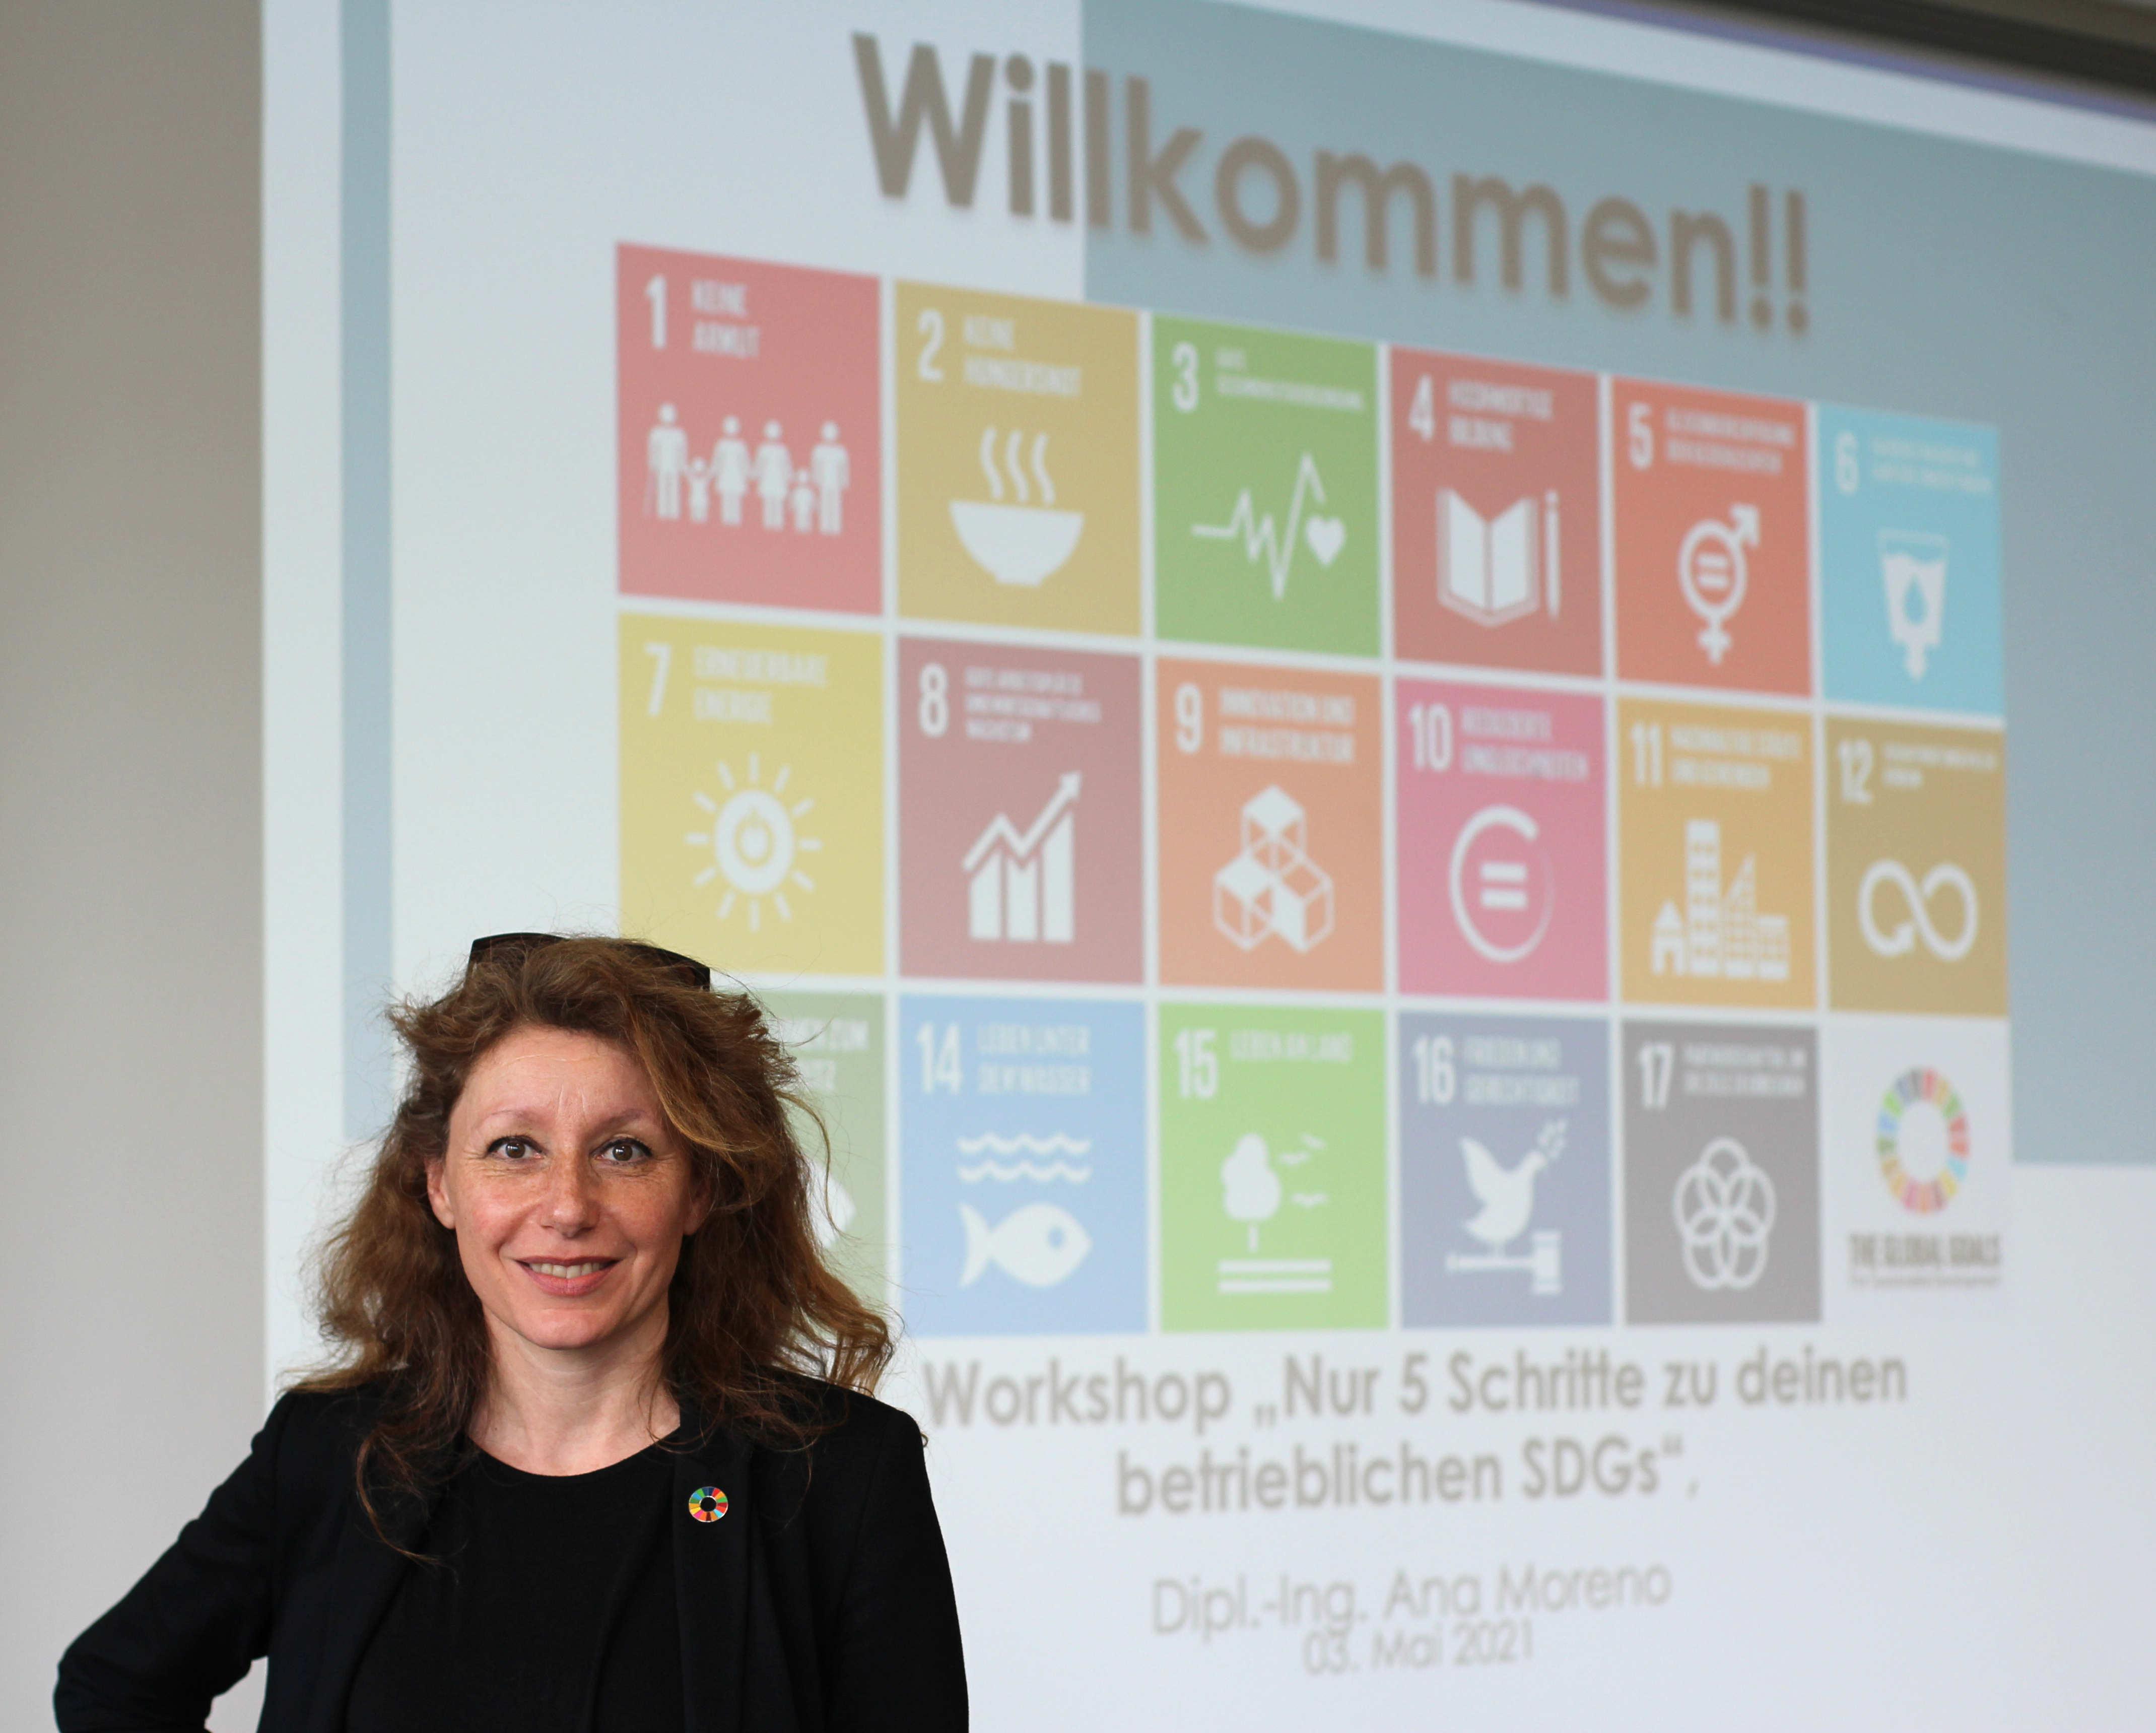 Workshopreihe "Nur 5 Schritte zu deinen betrieblichen SDGs (Sustainable Development Goals)